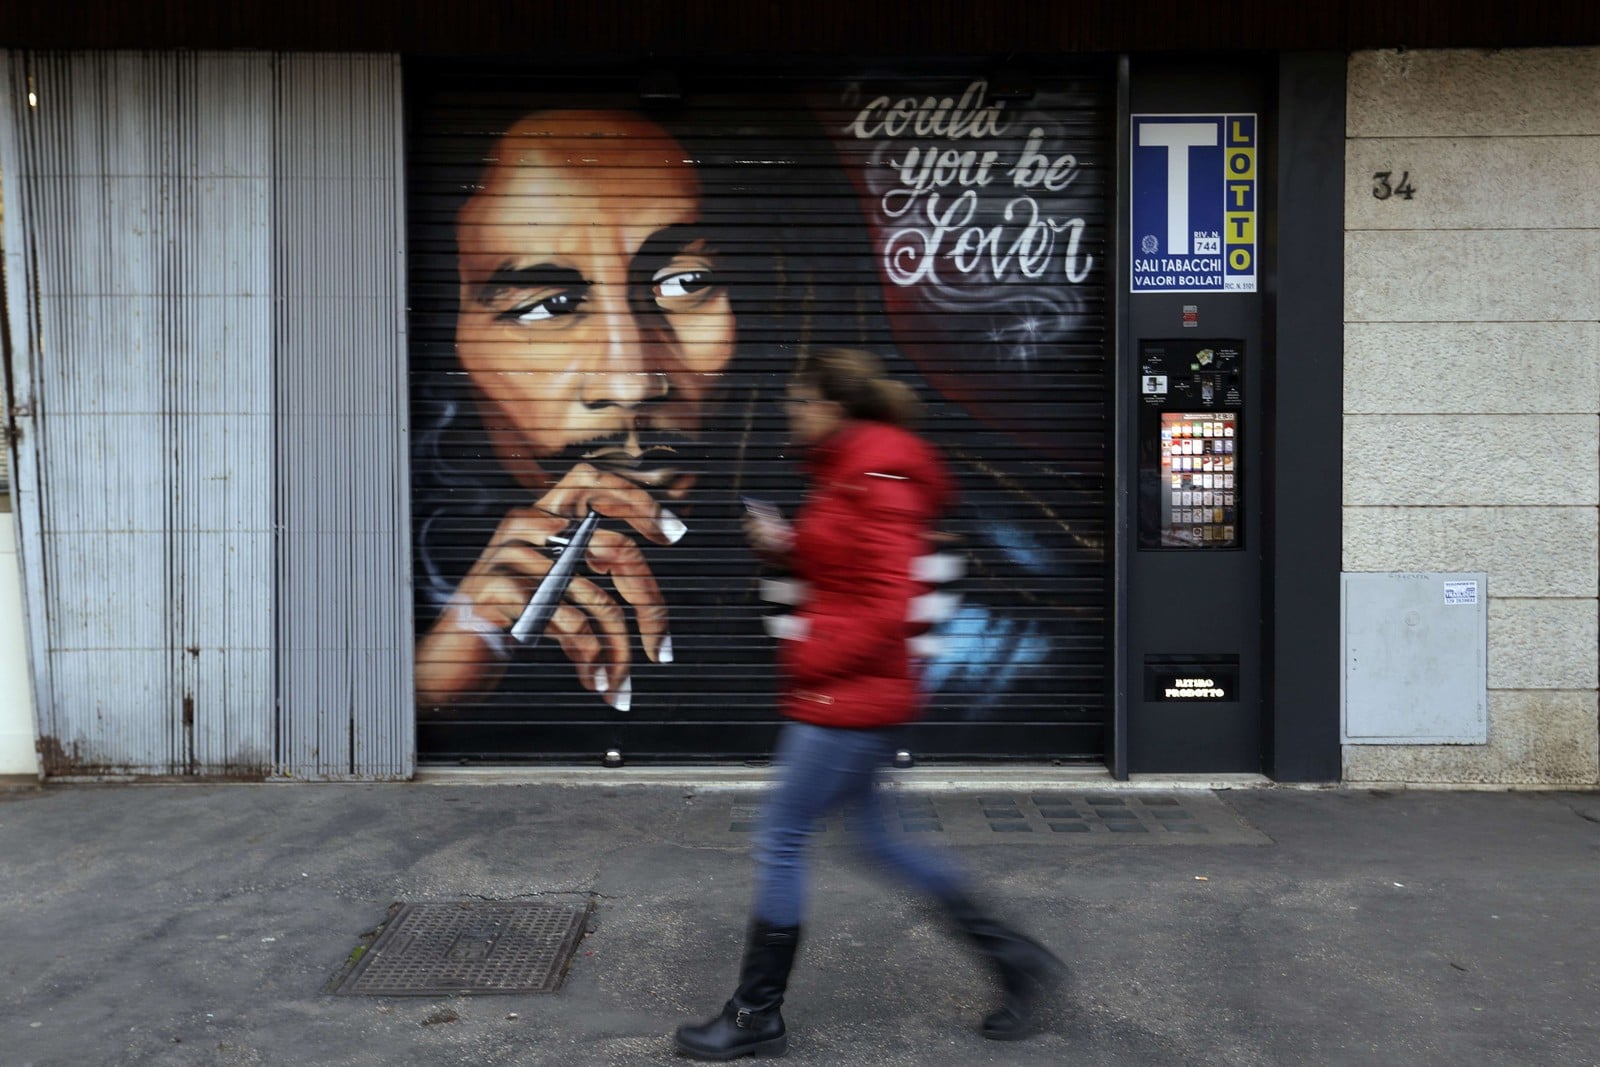 Peinture murale de Bob Marley à Rome : une icône du rastafari qui traverse les frontières,
Auteurs  : Gregorio Borgia/AP/SIPA,
Numéro de reportage  : AP22276493_000001.